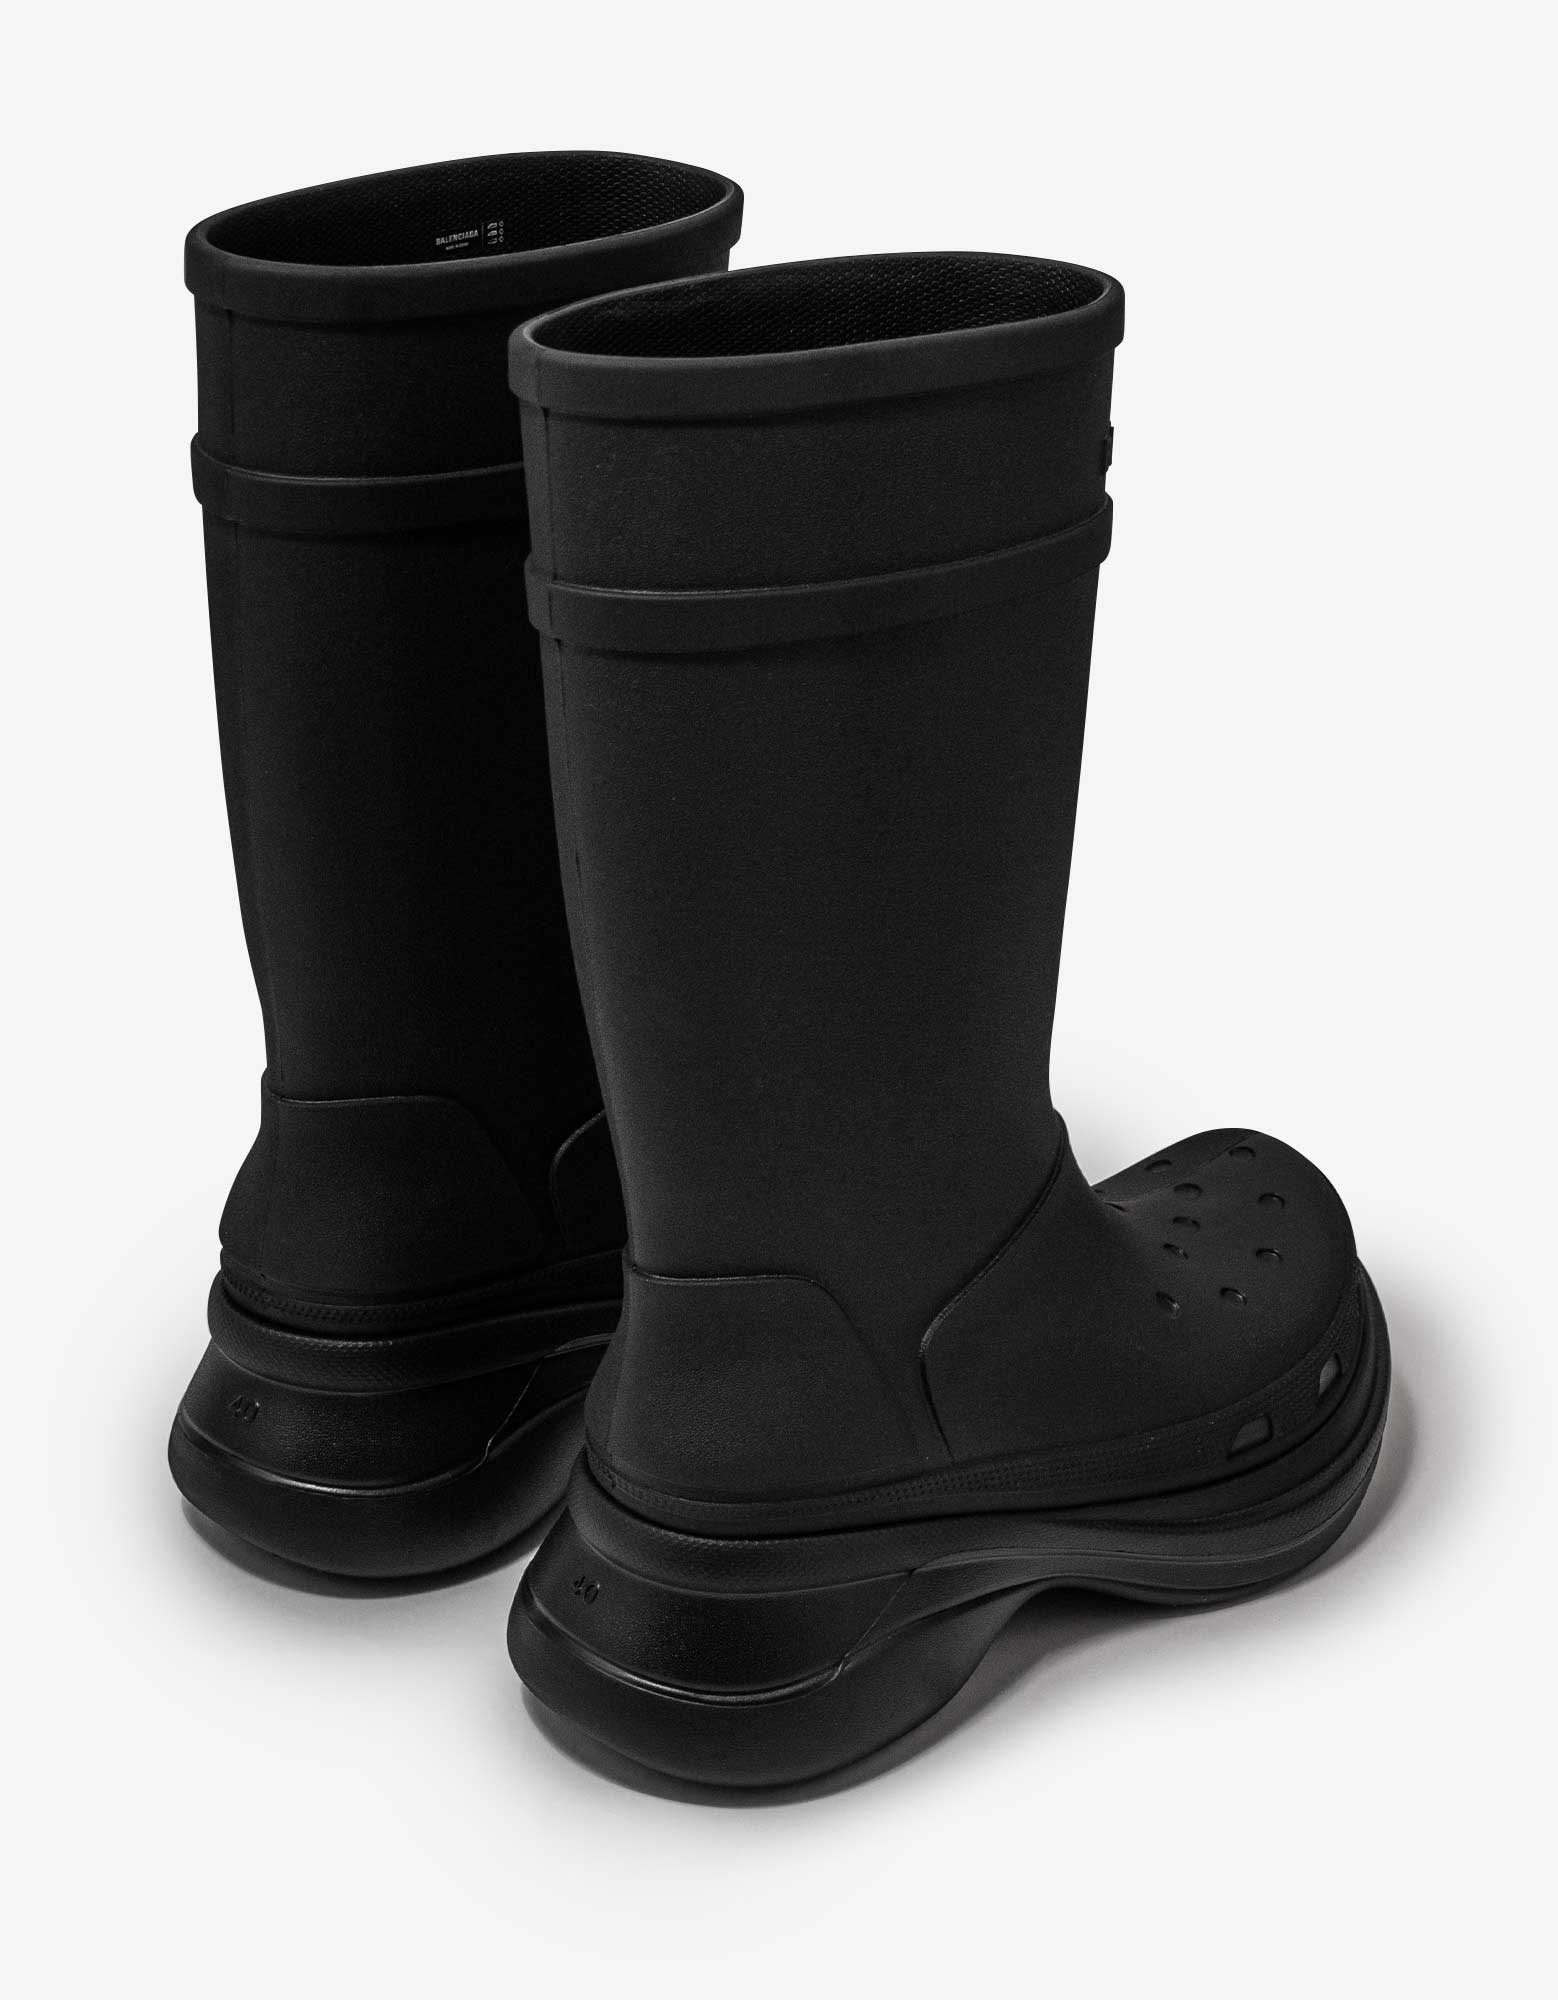 Black Crocs Boots - 6